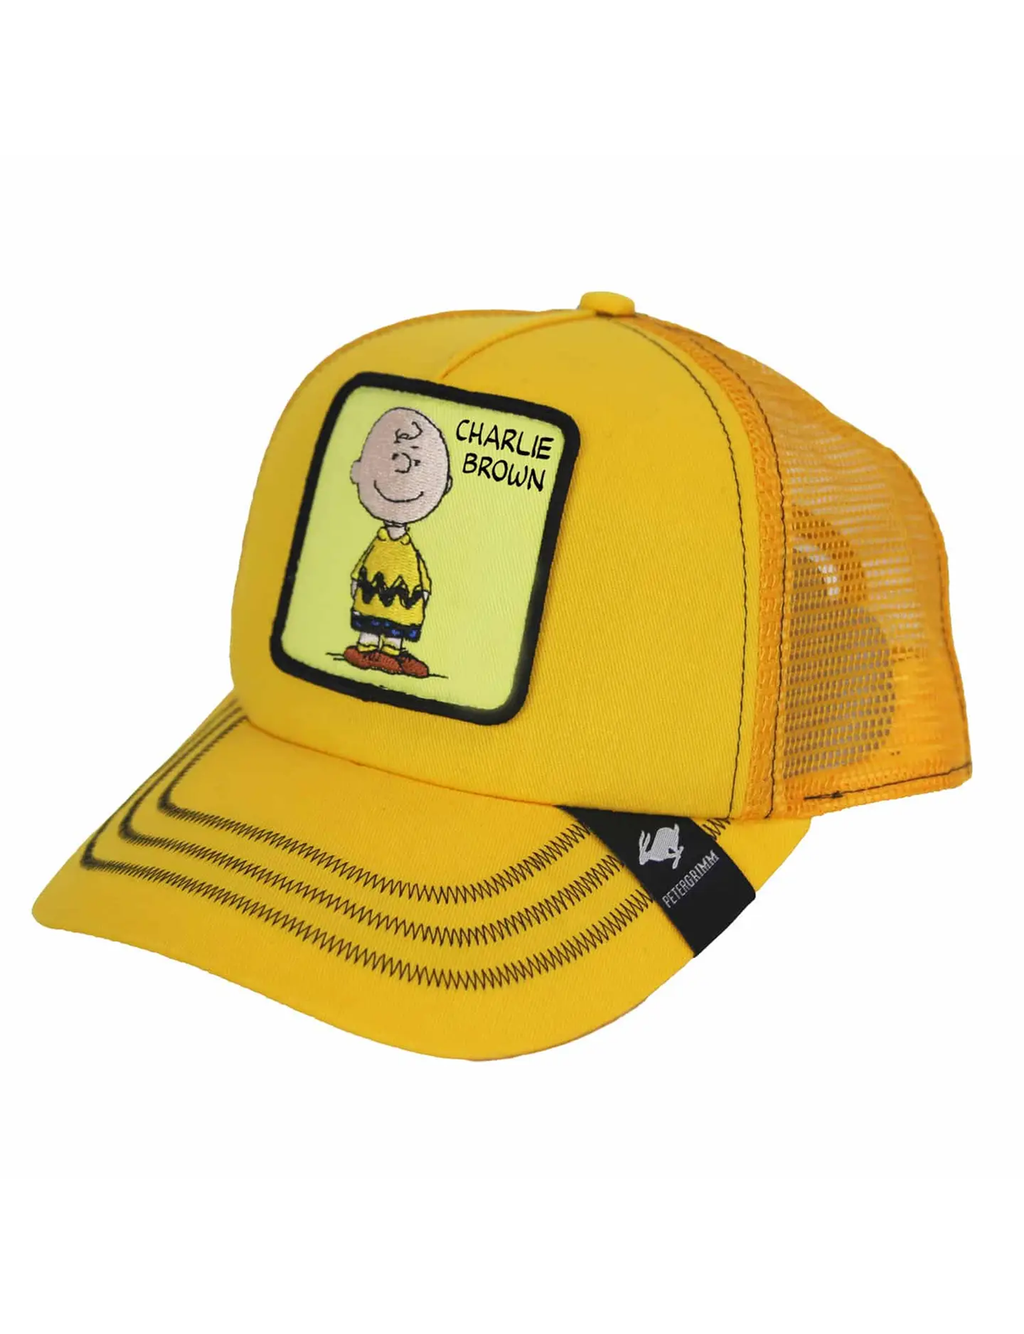 Peanuts Mesh Trucker Hat, Charlie Brown